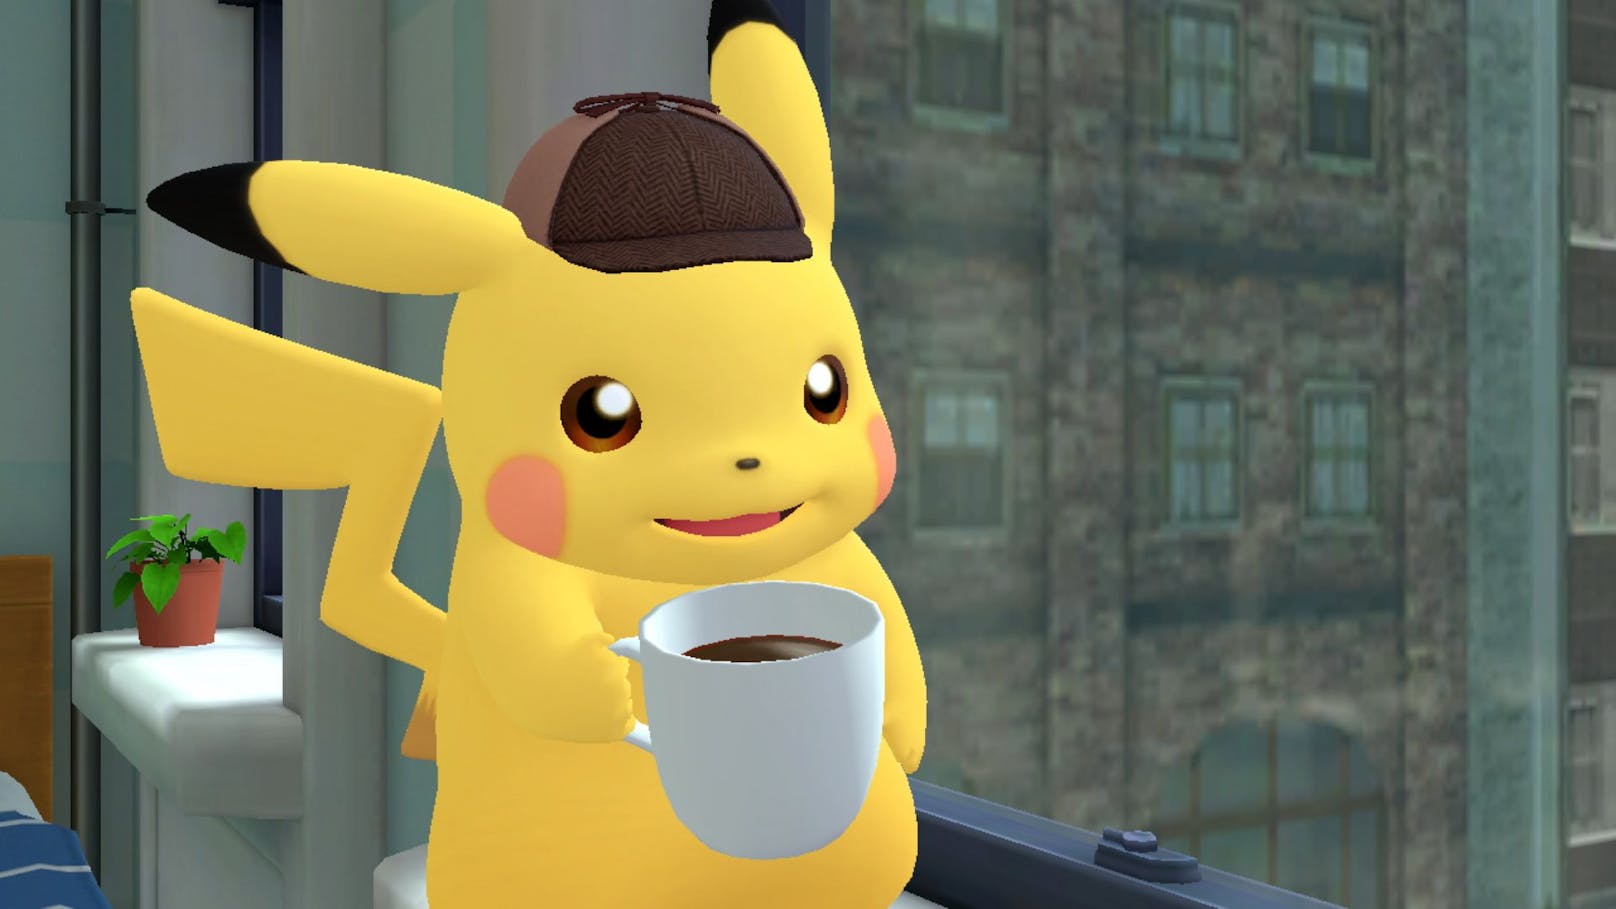 "Meisterdetektiv Pikachu kehrt zurück" ist ein Story-getriebenes Adventure, das eine tolle Handlung bietet, beim Gameplay bleibt man allerdings stark beschränkt.